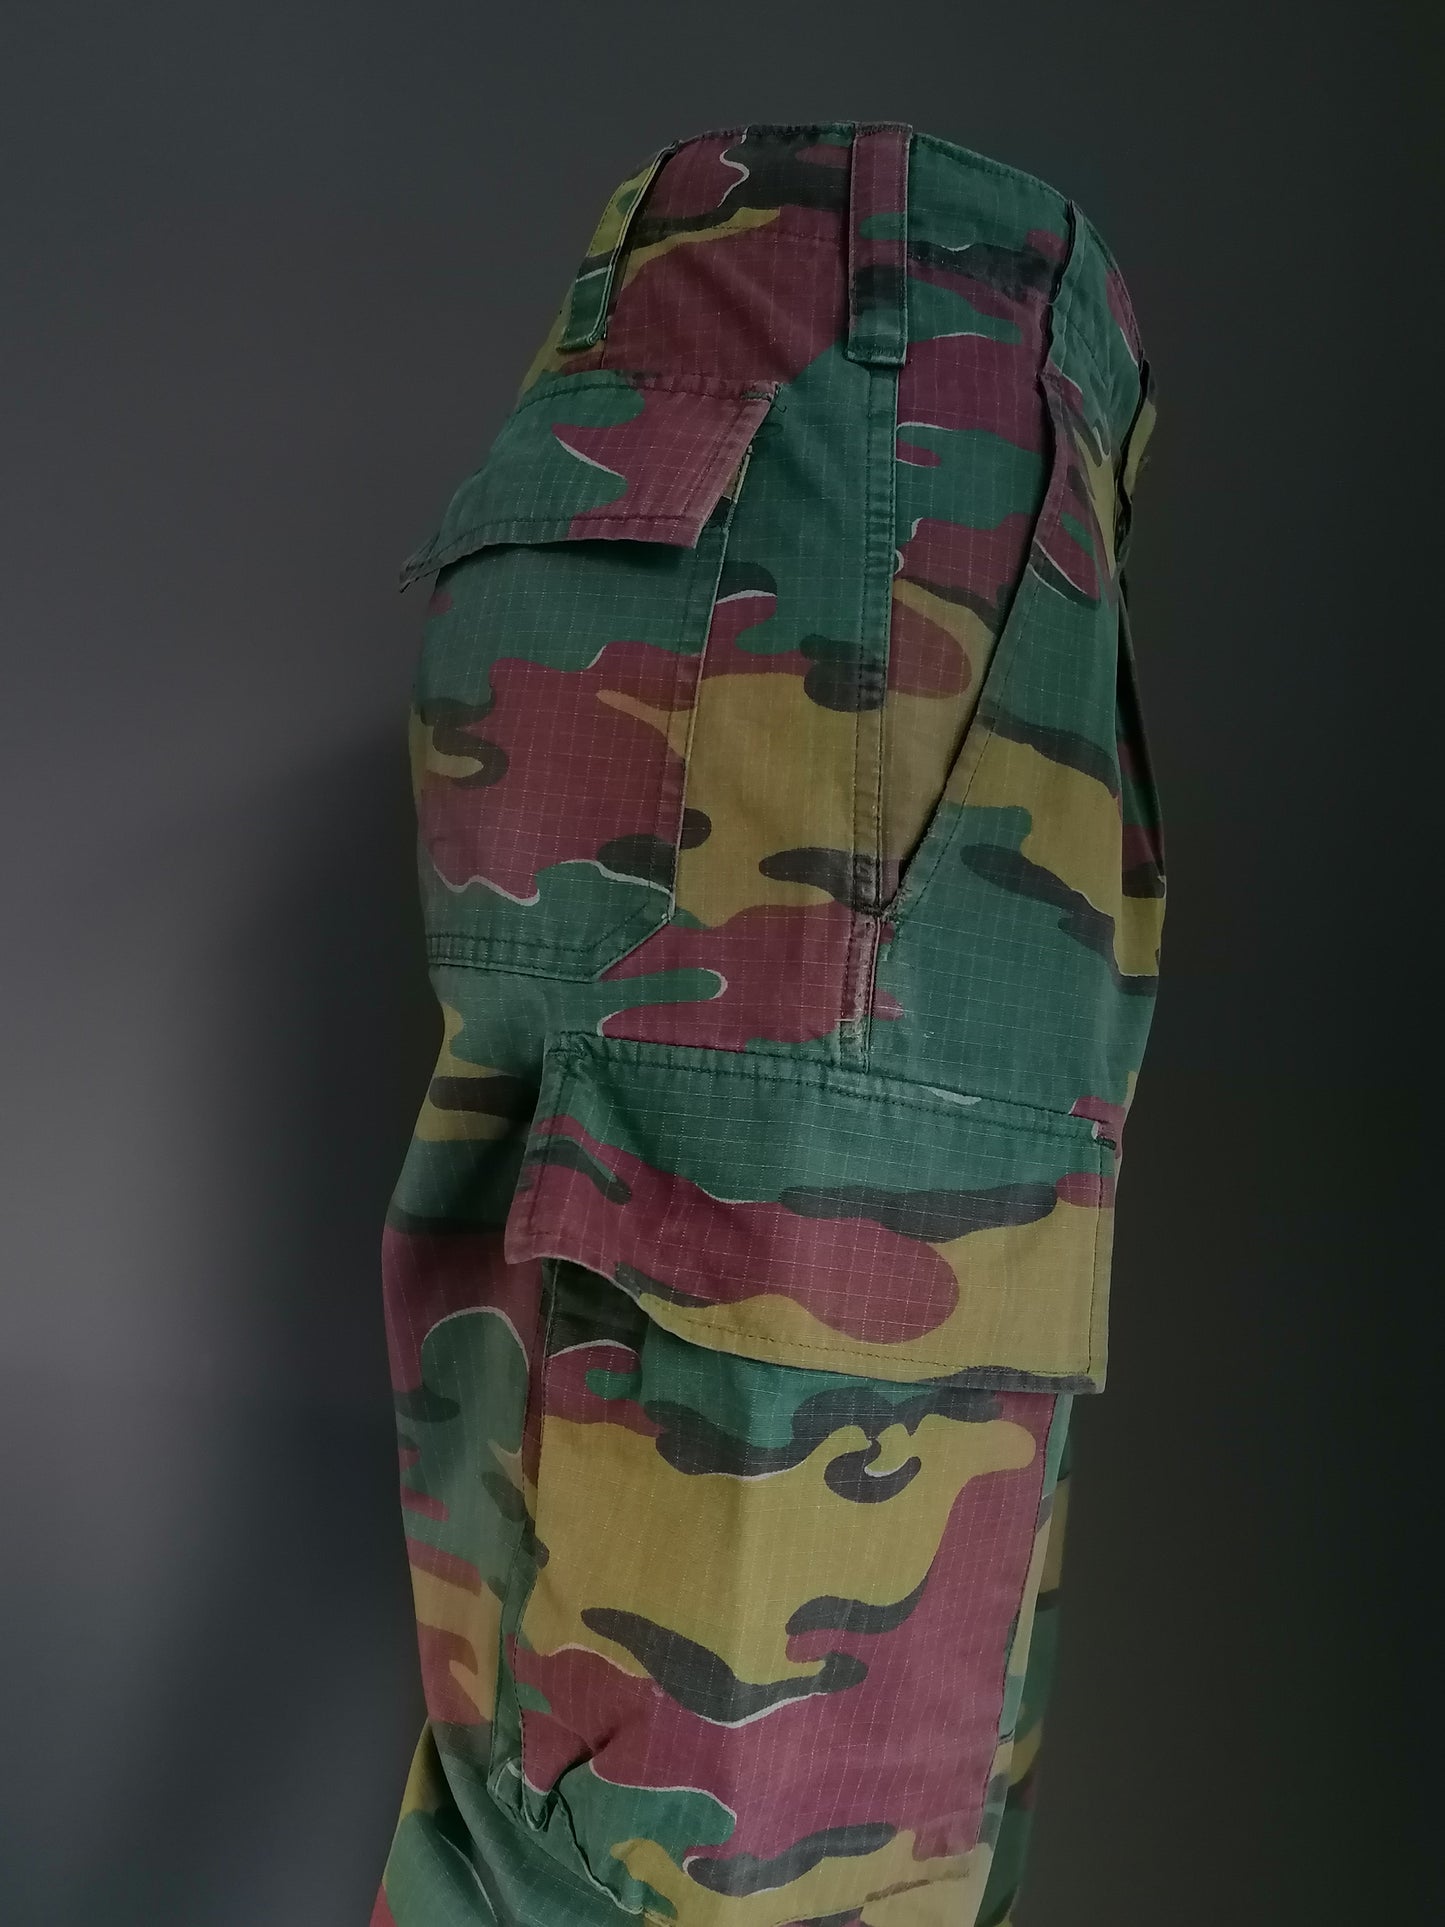 Army / Leger broek met knopen. Bruin Groene camouflageprint. "2000". Maat M.